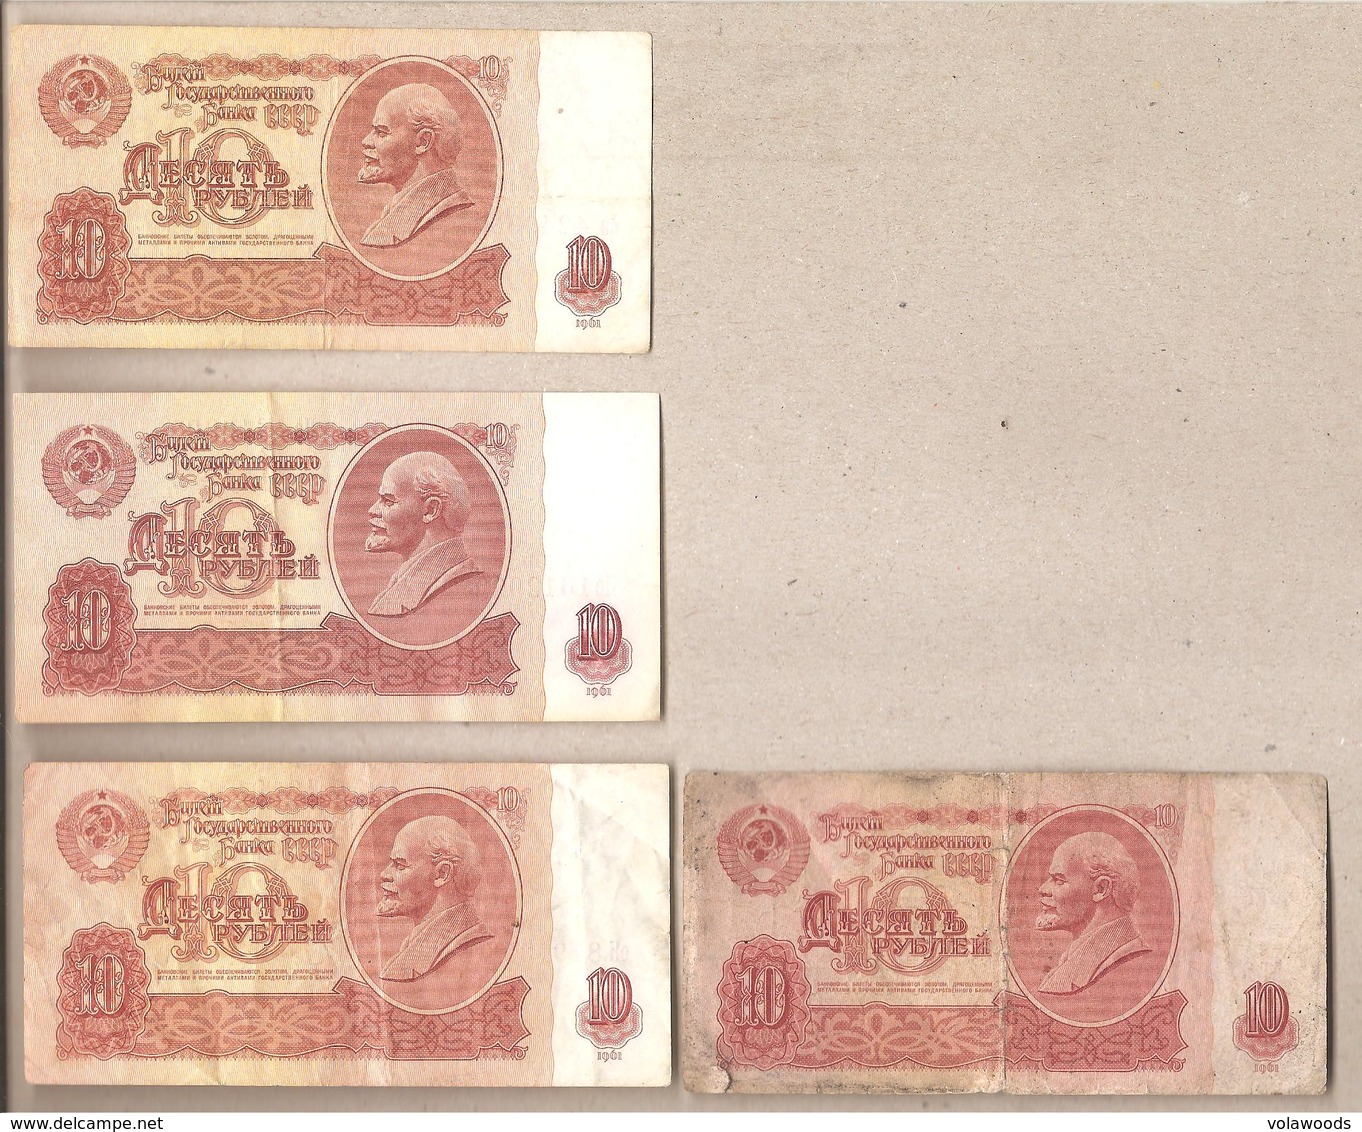 URSS - Banconote Circolate Da 10 Rubli P-233 - 1961 - Tutte E 4 Le Varietà Emesse - Russia